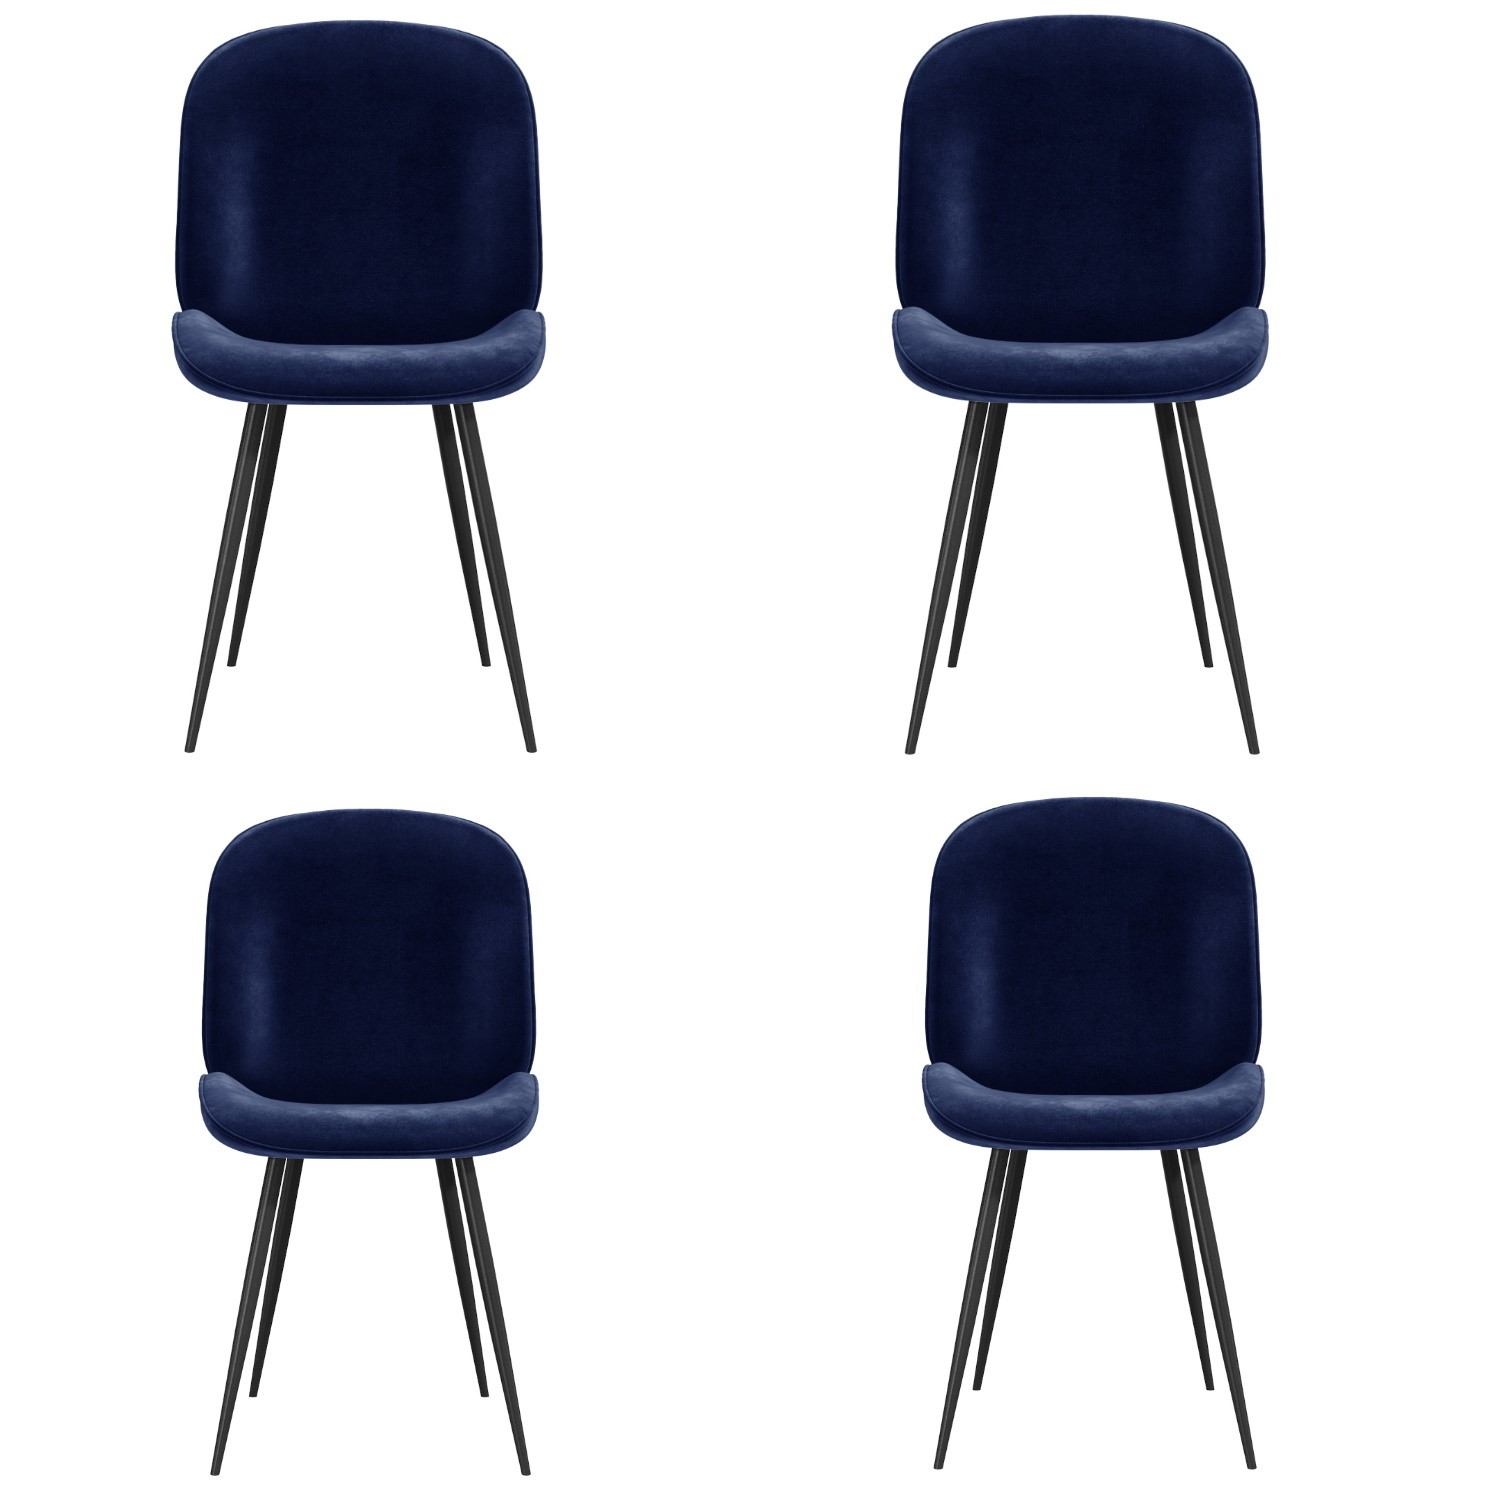 Set Of 4 Navy Blue Velvet Dining Chairs, Navy Blue Velvet Dining Chairs Set Of 4